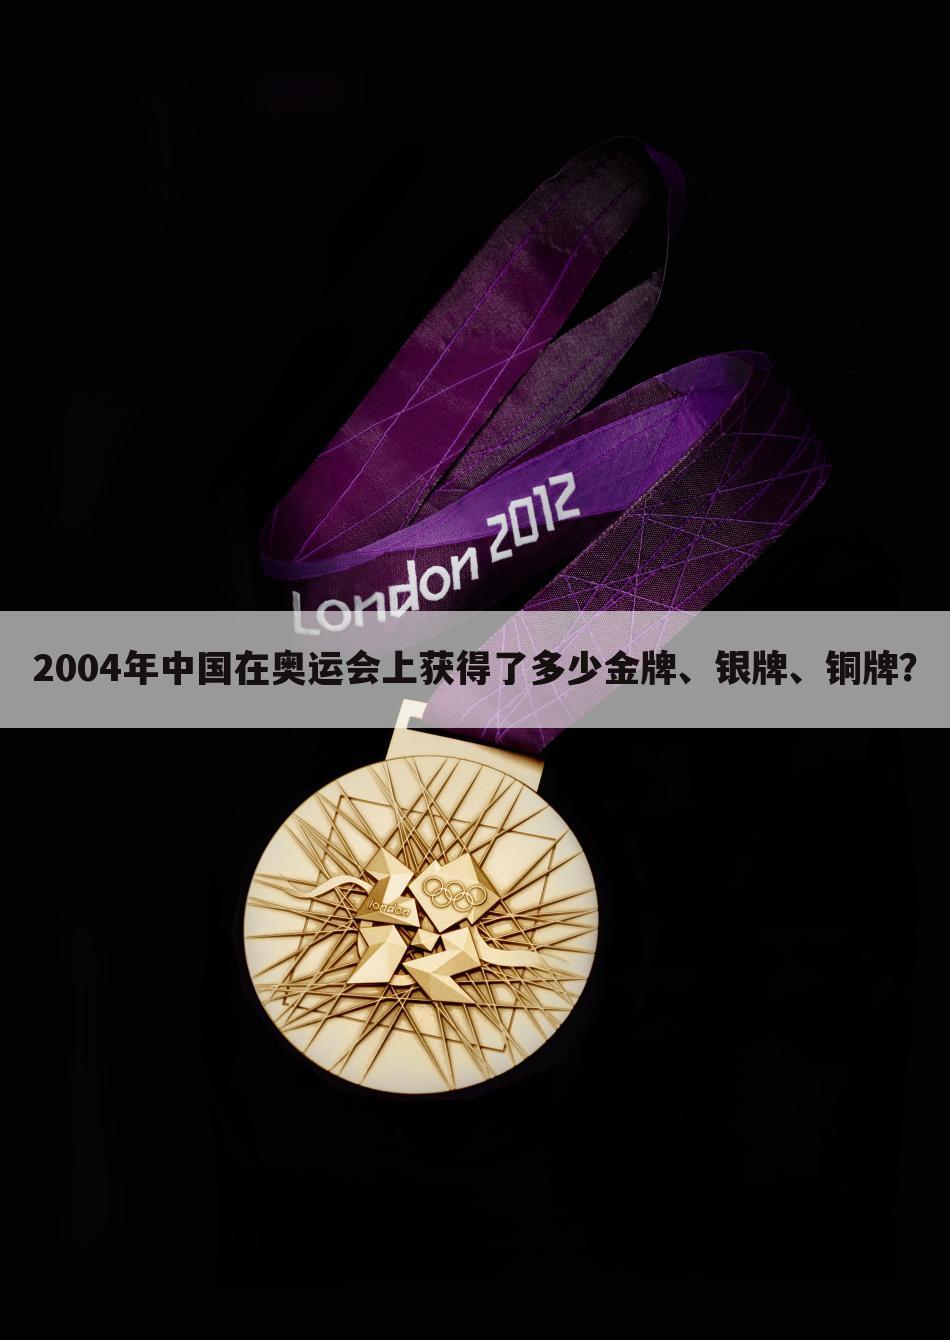 2004年中国在奥运会上获得了多少金牌、银牌、铜牌？